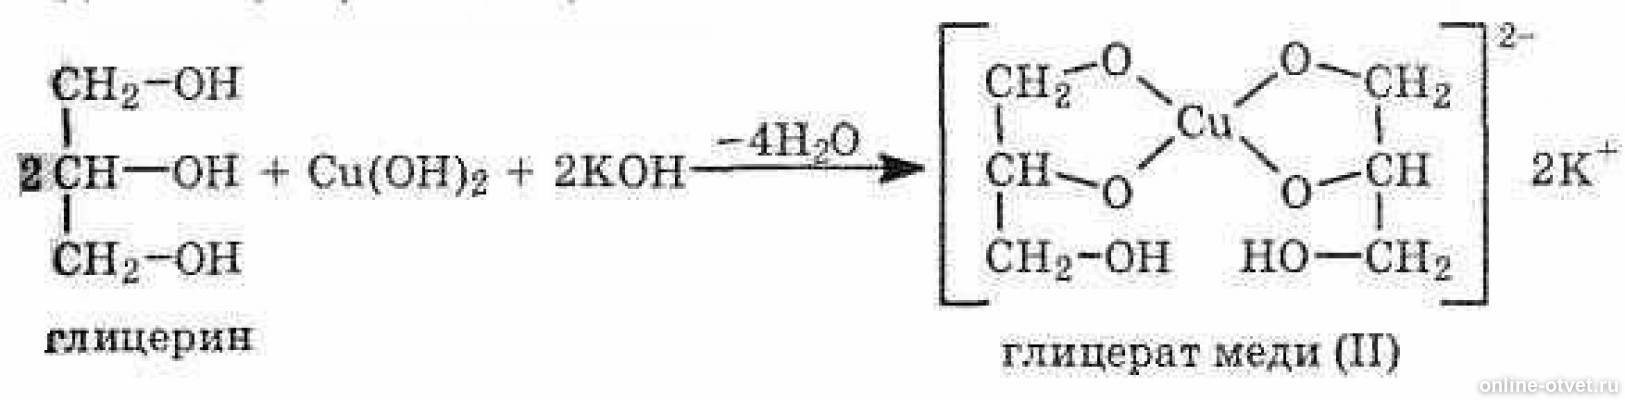 Глицерин сульфат меди 2. Взаимодействие глицерина с cu Oh 2. Глицерин плюс гидроксид меди 2. Реакция глицерина с гидроксидом меди 2. Взаимодействие глицерина с гидроксидом меди 2.